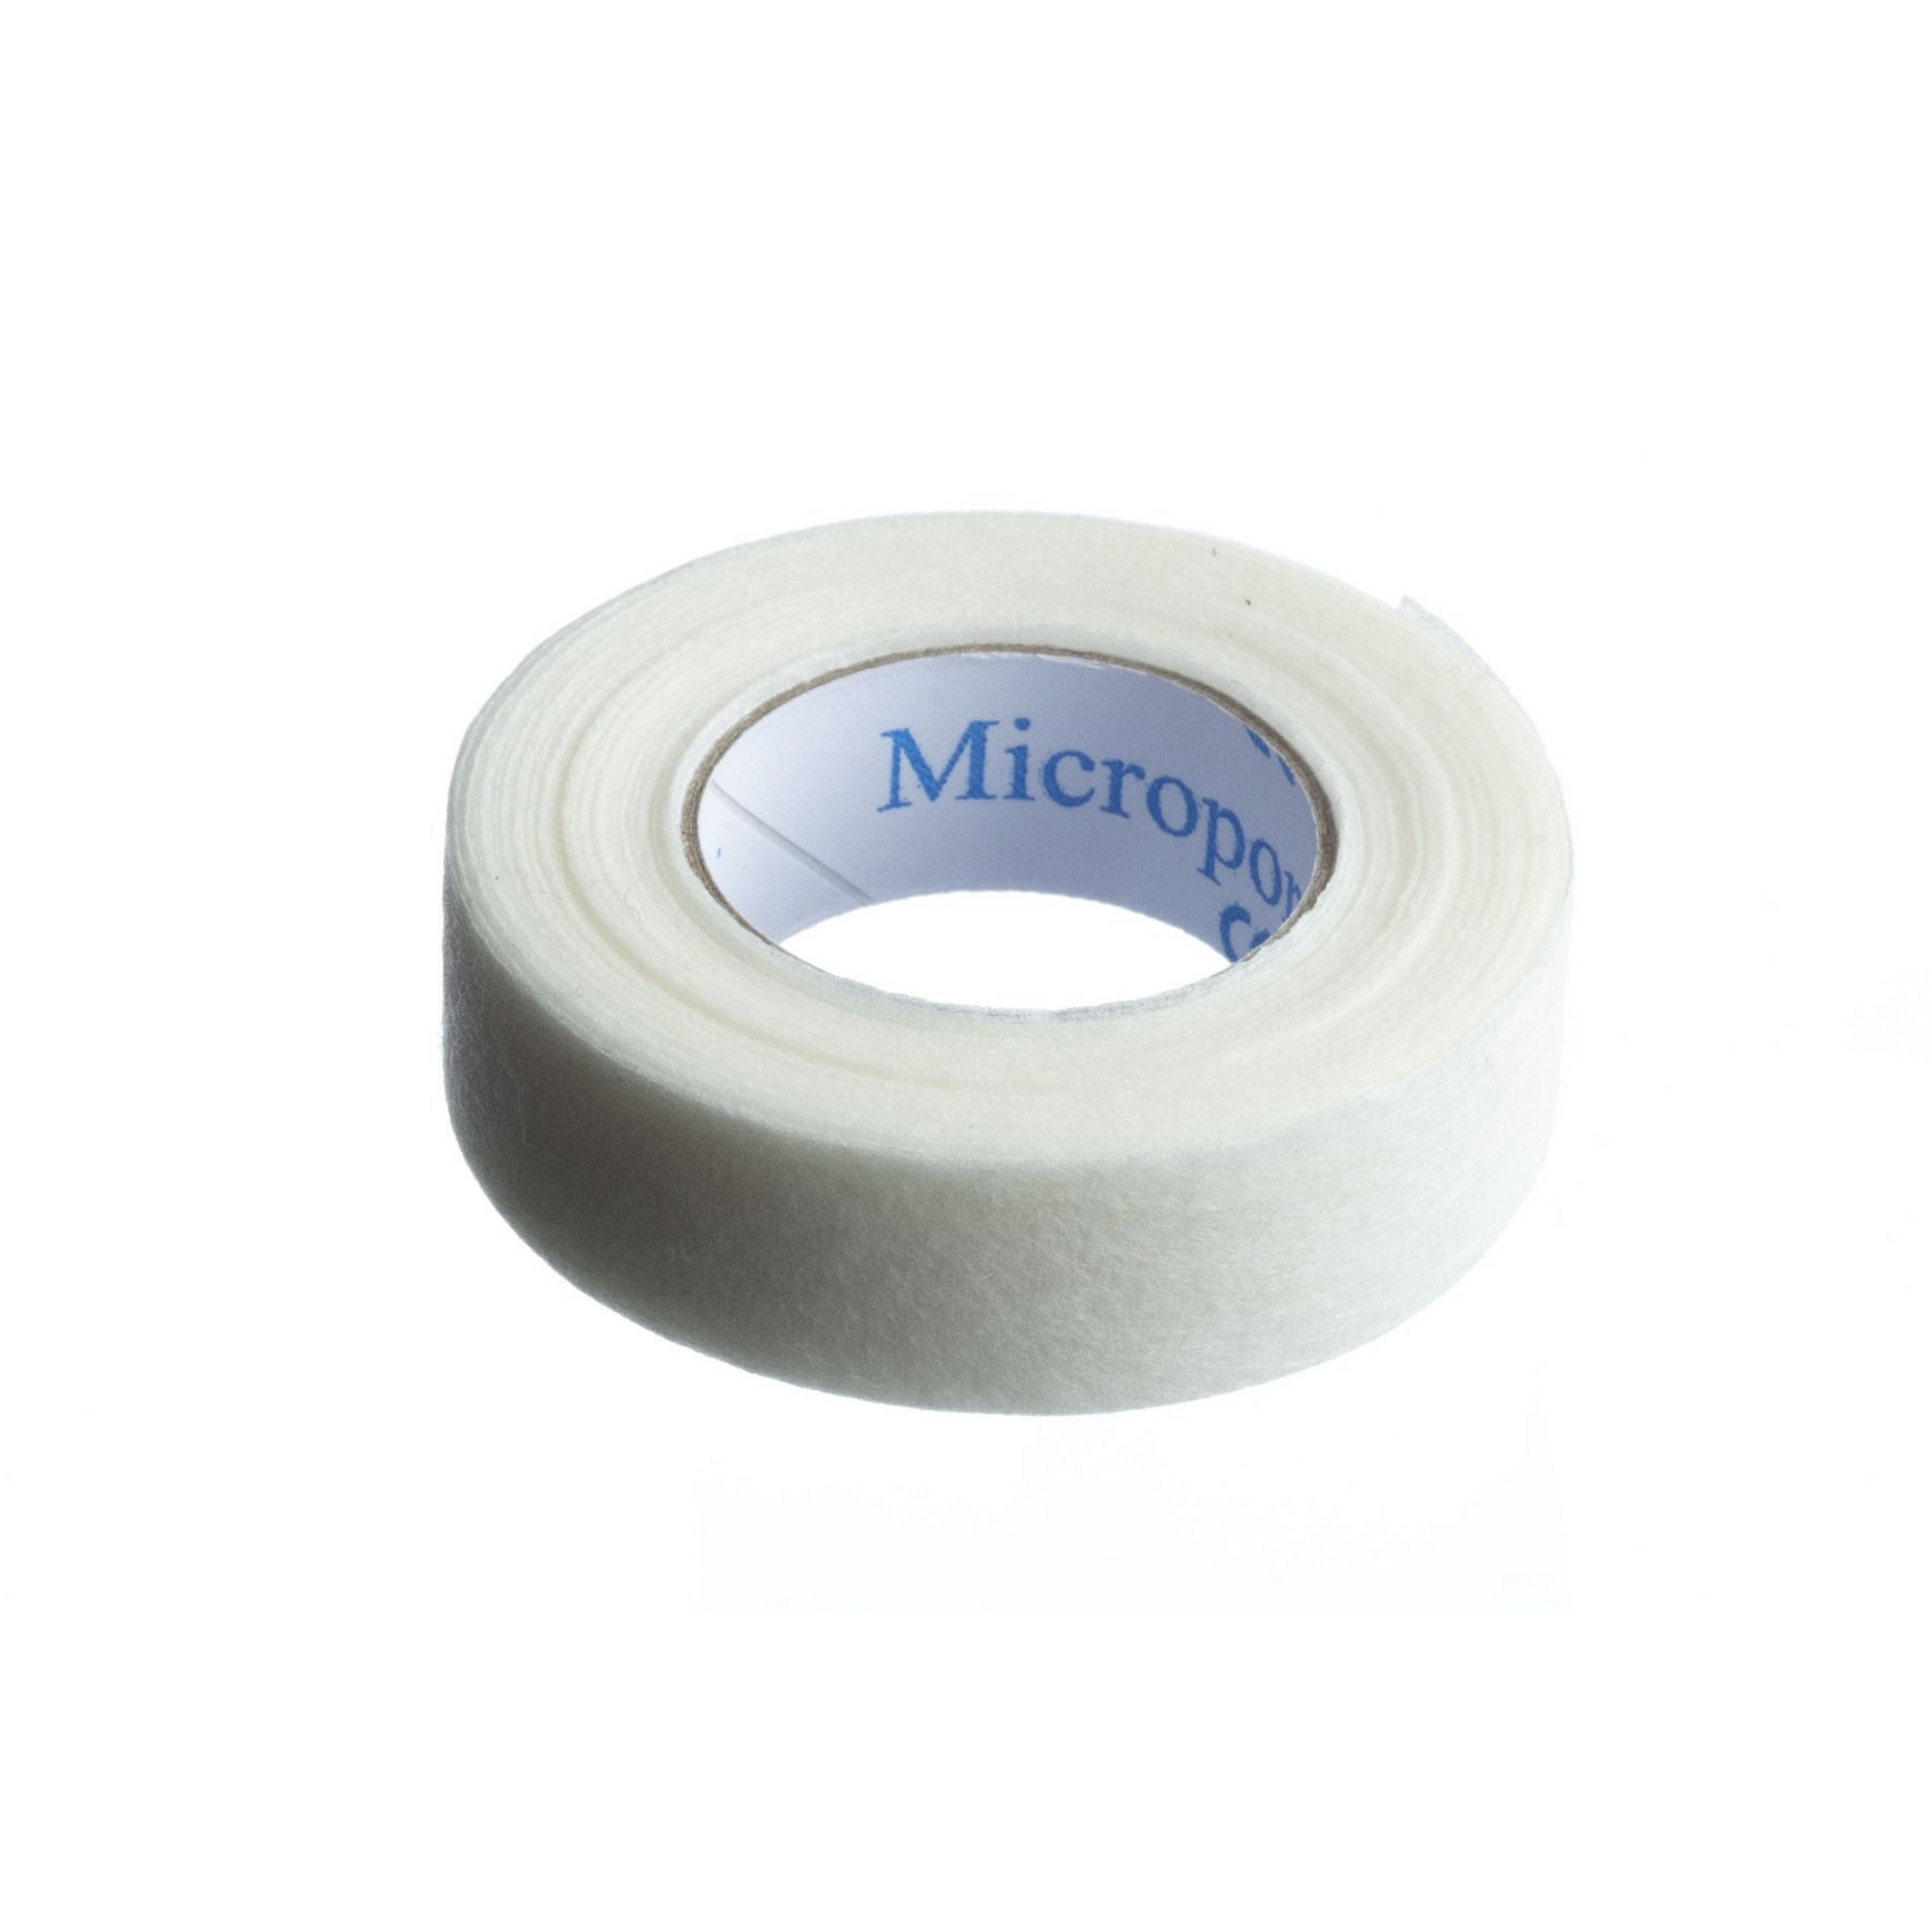 3M Micropore Tape